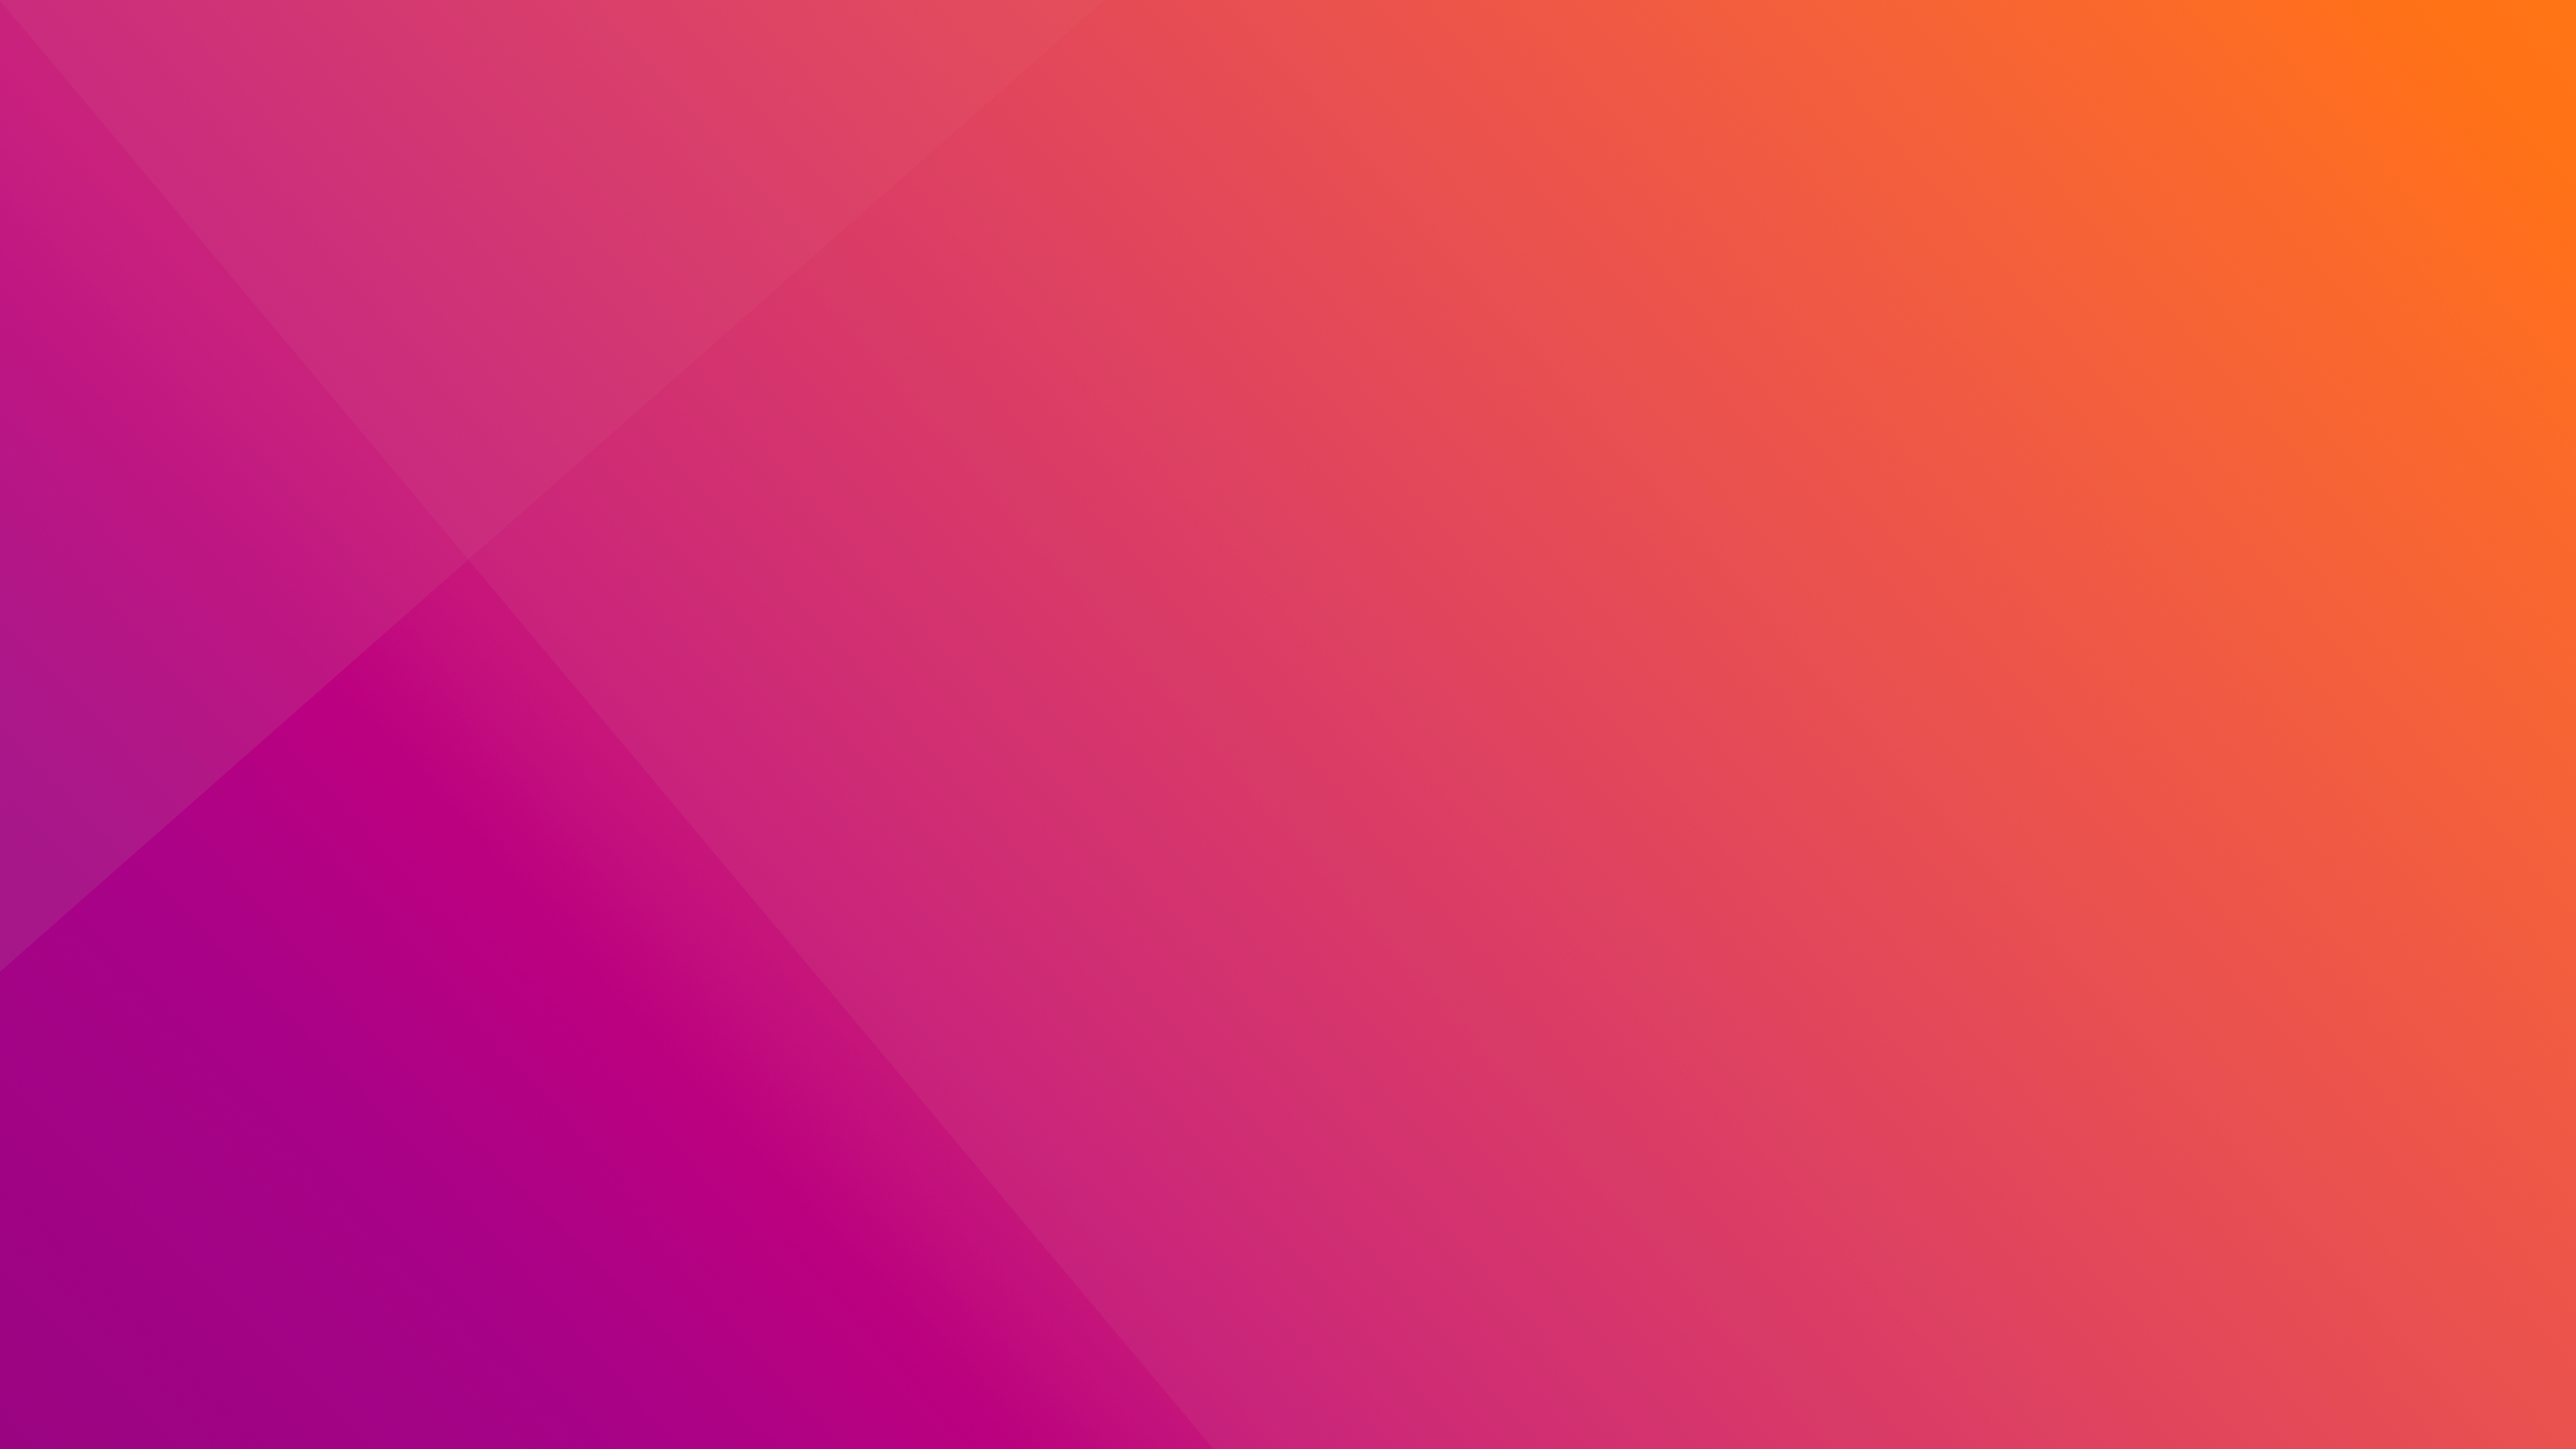 Ubuntu inspired Clean Wallpaper [3840x2160]